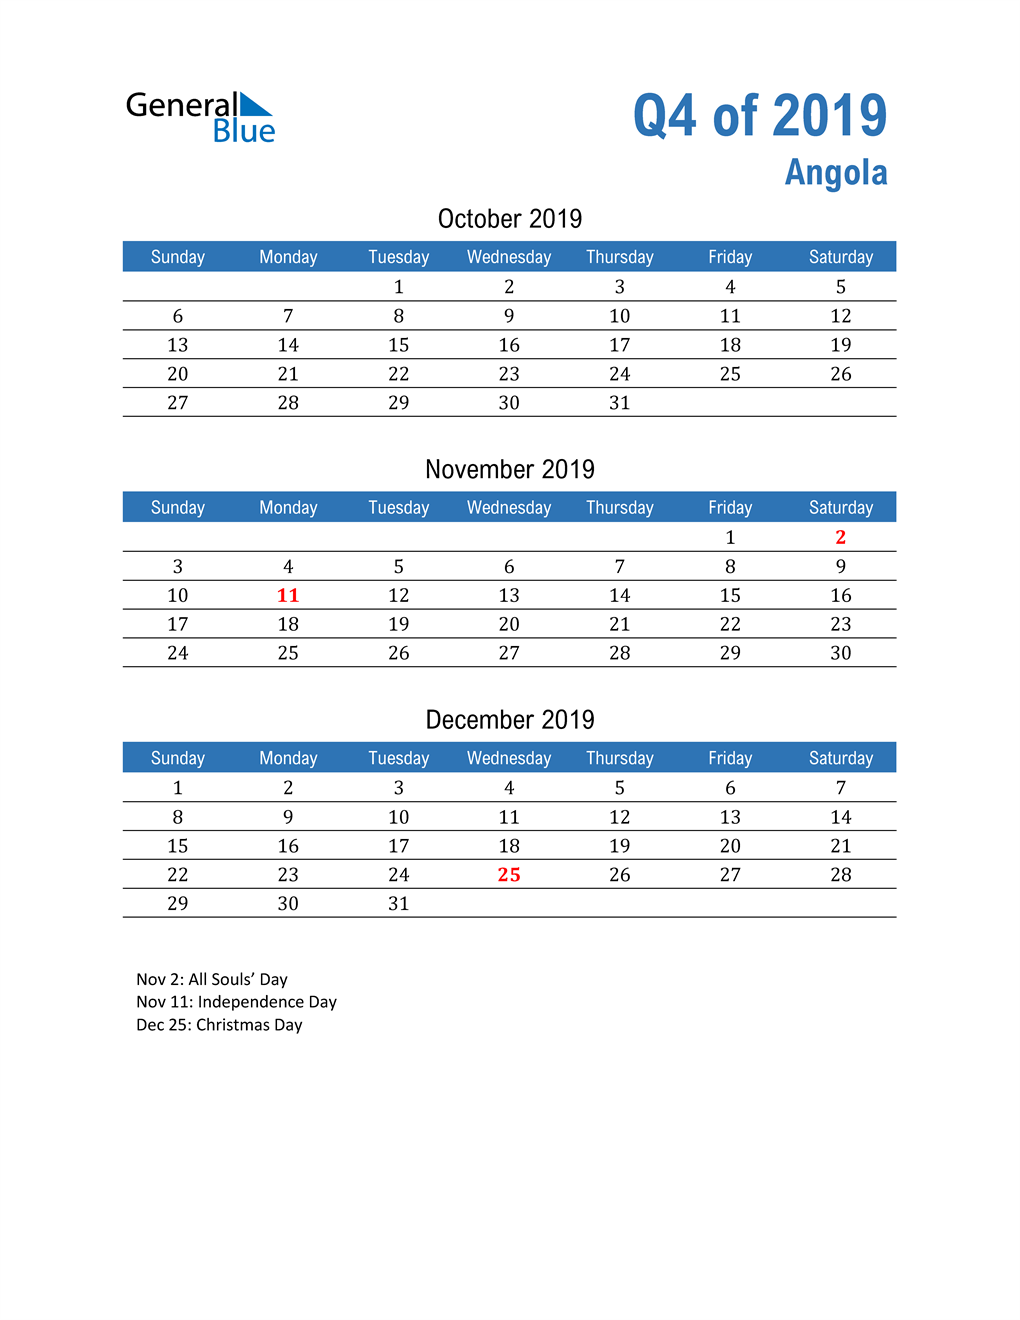  Angola 2019 Quarterly Calendar 